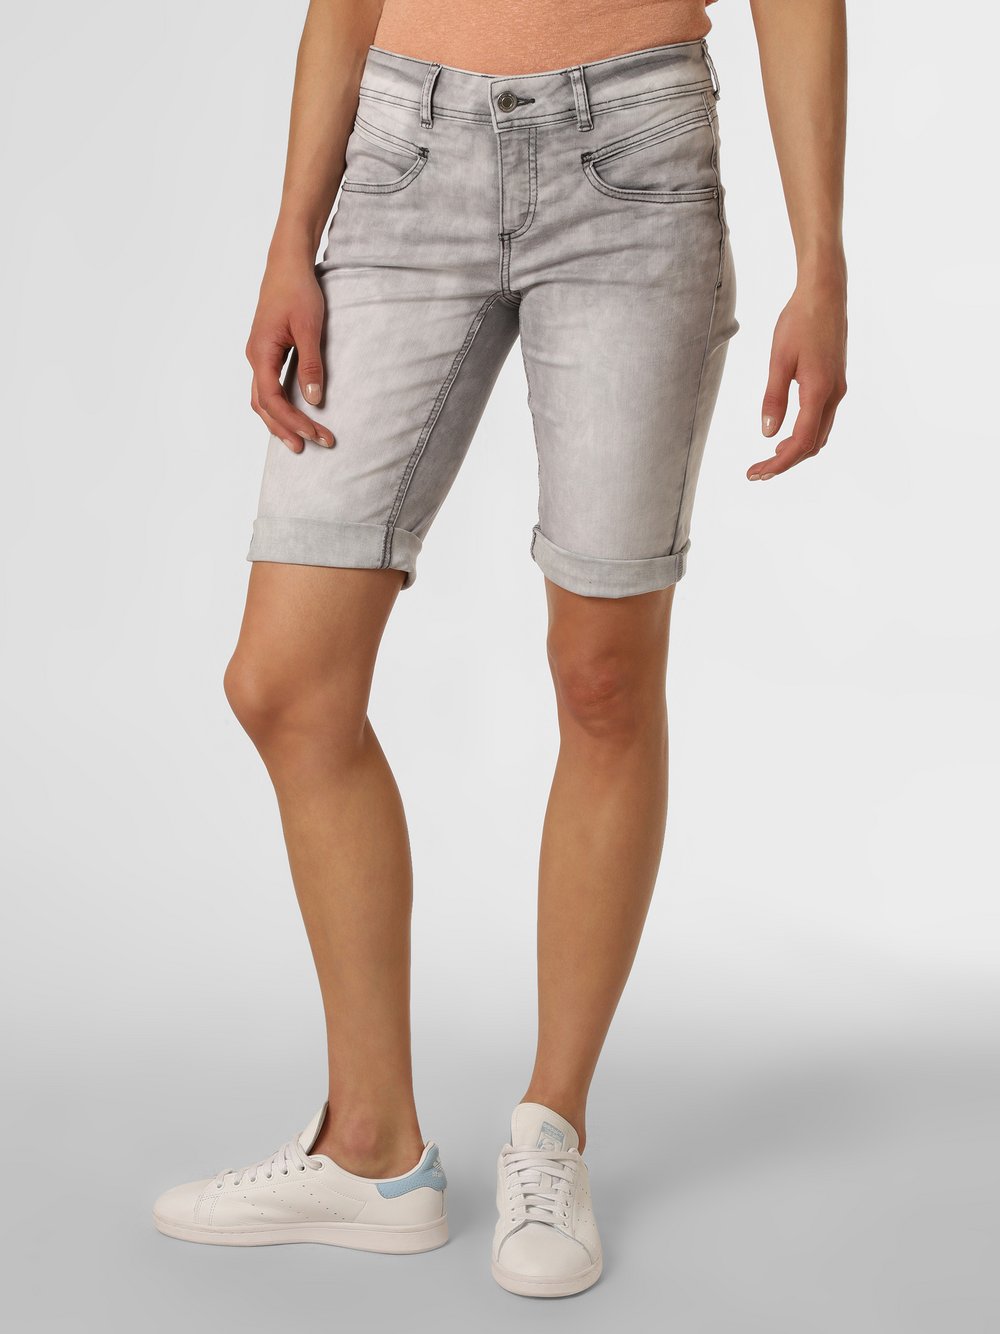 Street One - Damskie krótkie spodenki jeansowe – Jane, szary